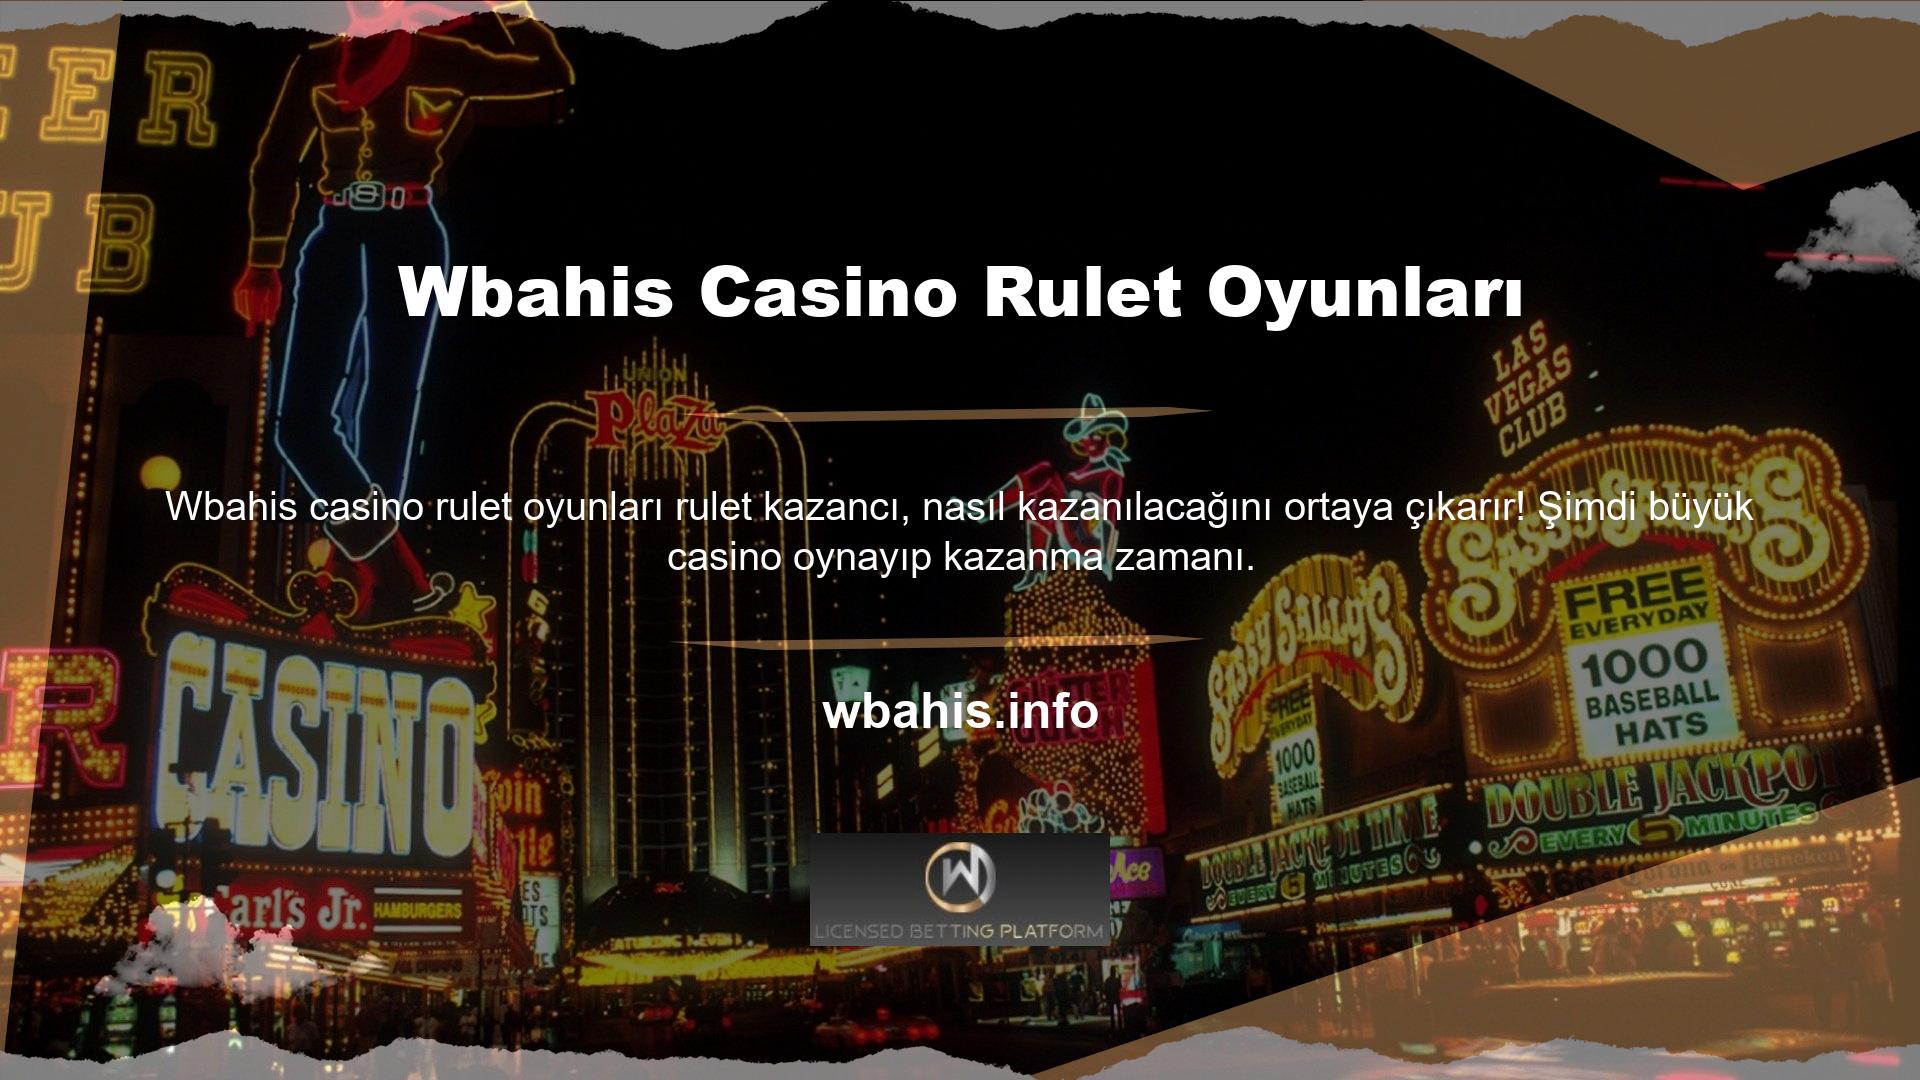 Wbahis casino rulet oyunlarını içeriden veya dışarıdan bahis oynayarak ve kazancınızı katlayarak oynayın